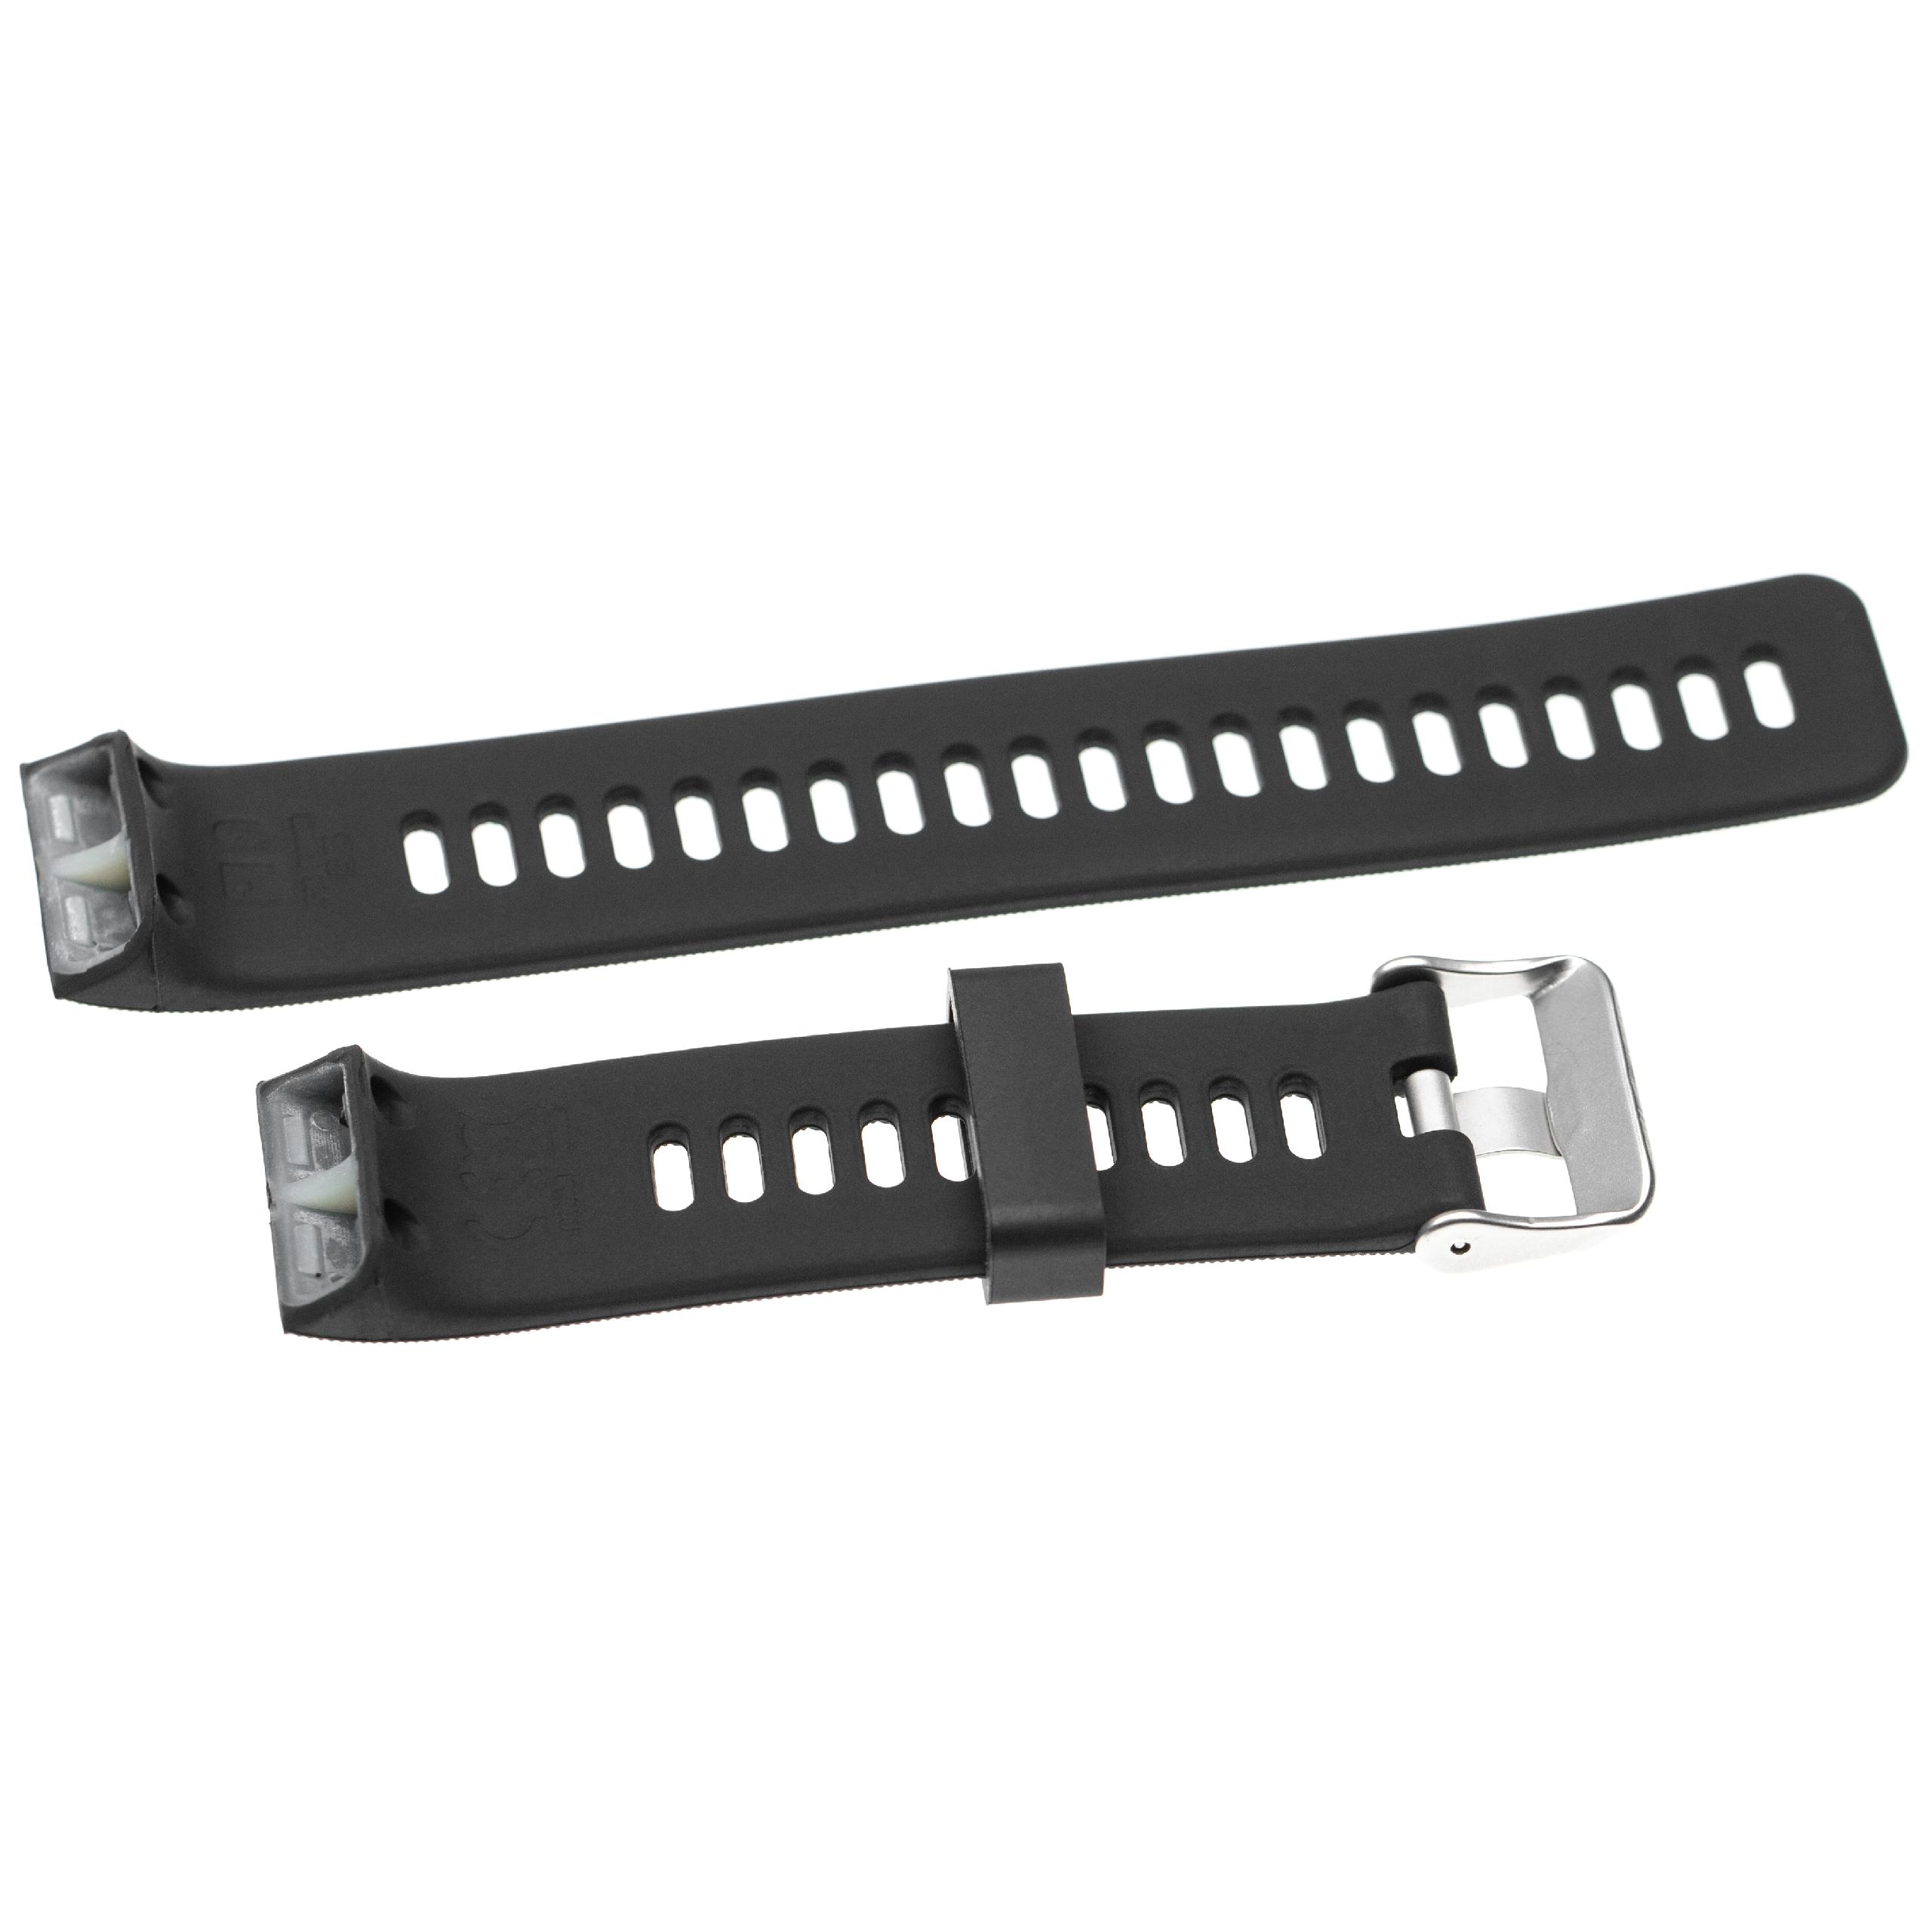 Bracelet pour montre intelligente Garmin Forerunner - 13,5 + 9,4 cm de long, 23mm de large, silicone, noir